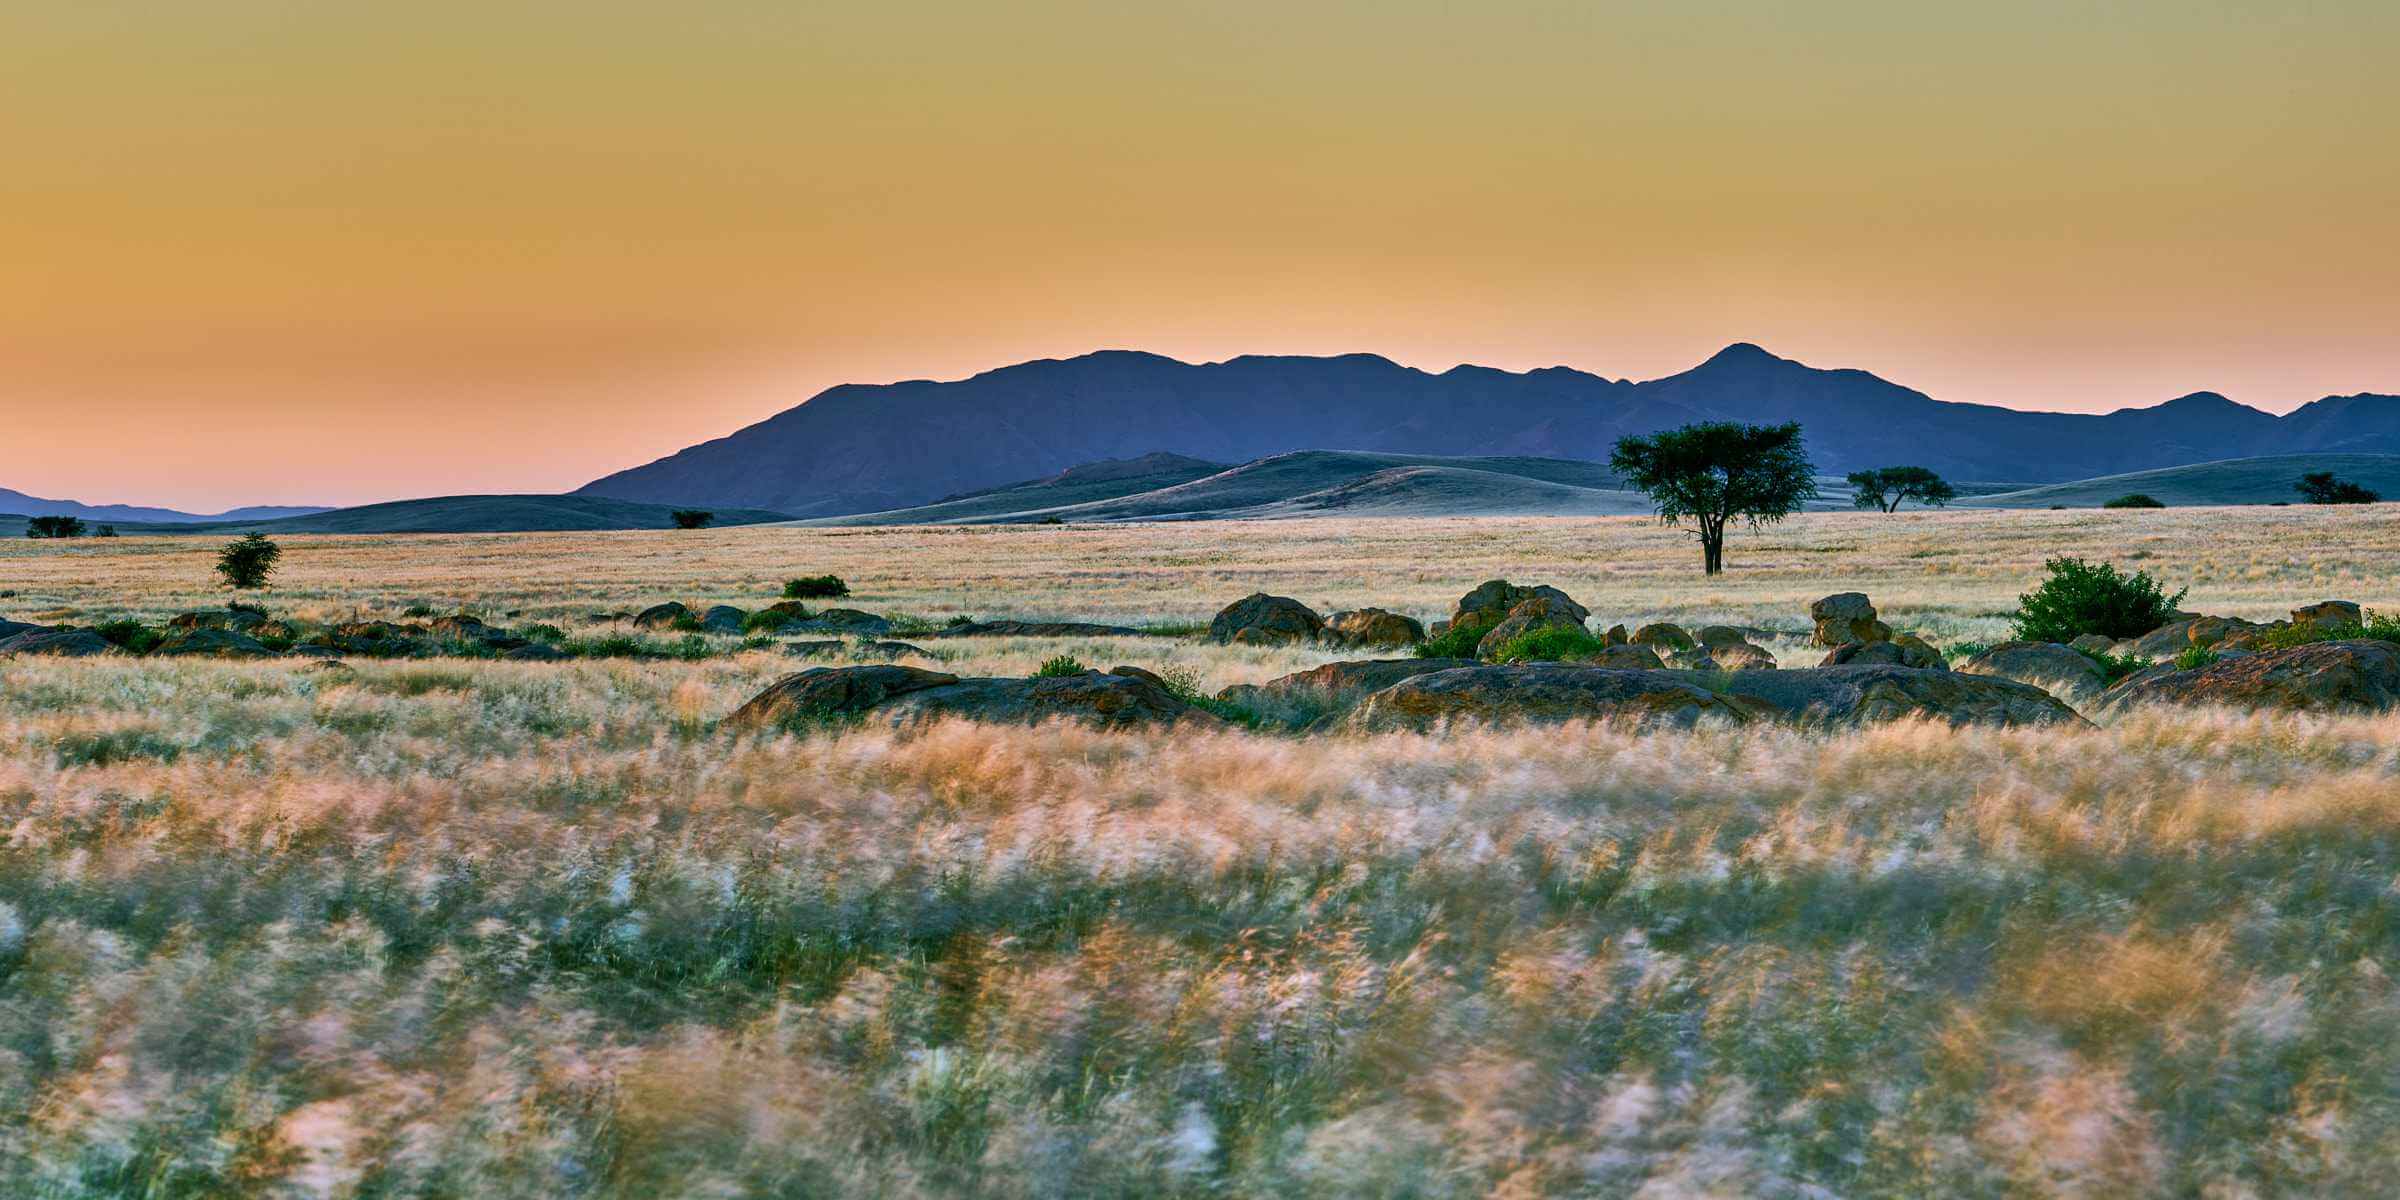 The endless vistas of the Namib Naukluft Park in Namibia.